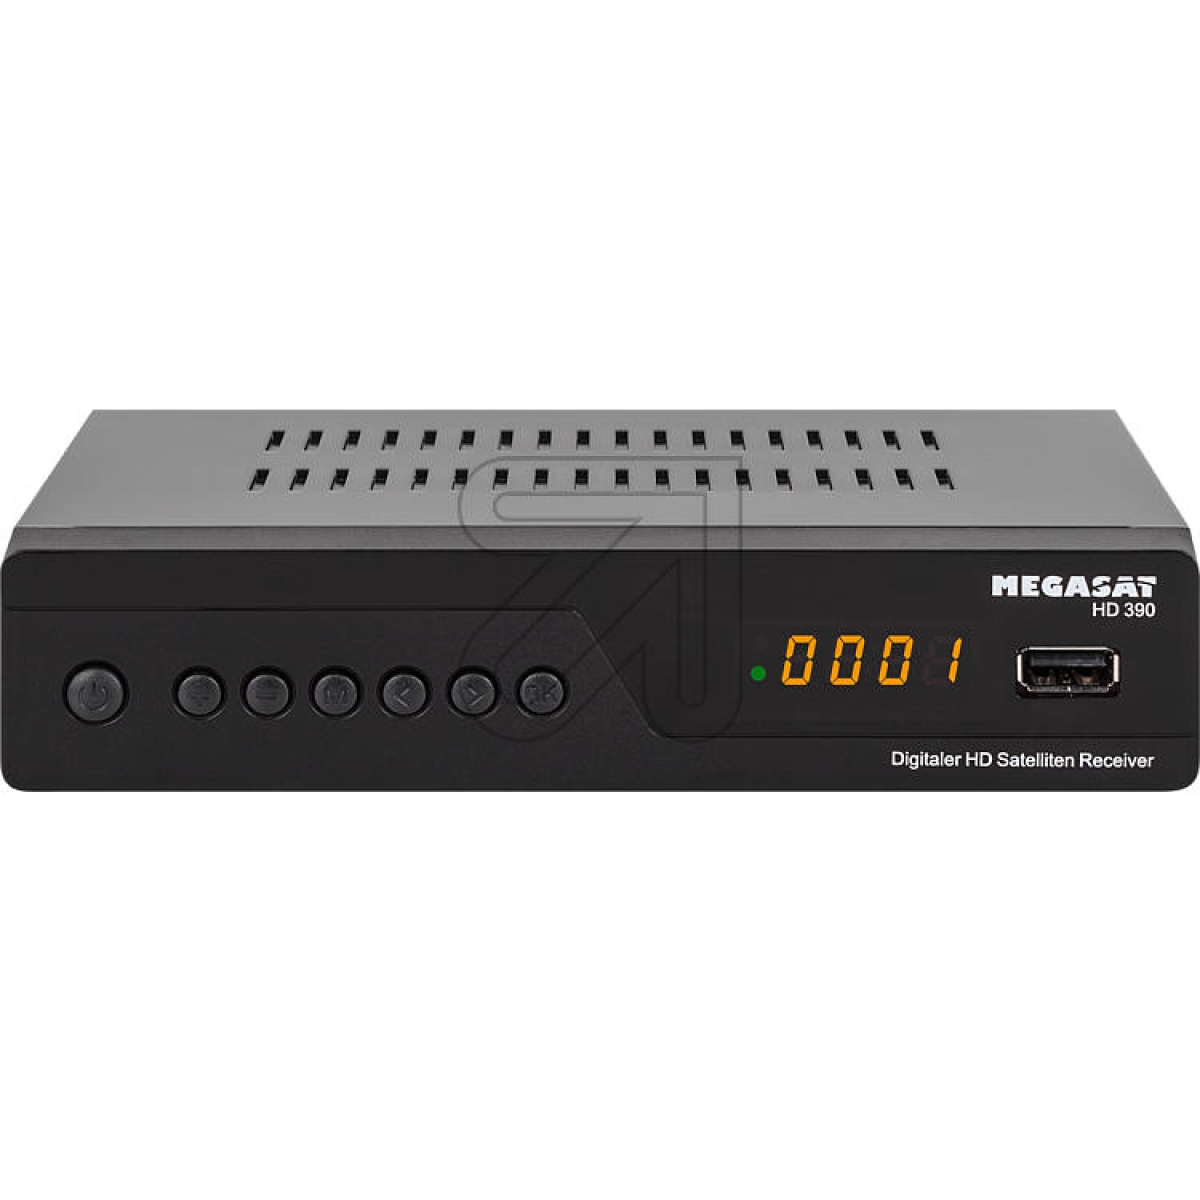 MEGASATHD-Satelliten-Receiver Megasat HD 390Artikel-Nr: 250570